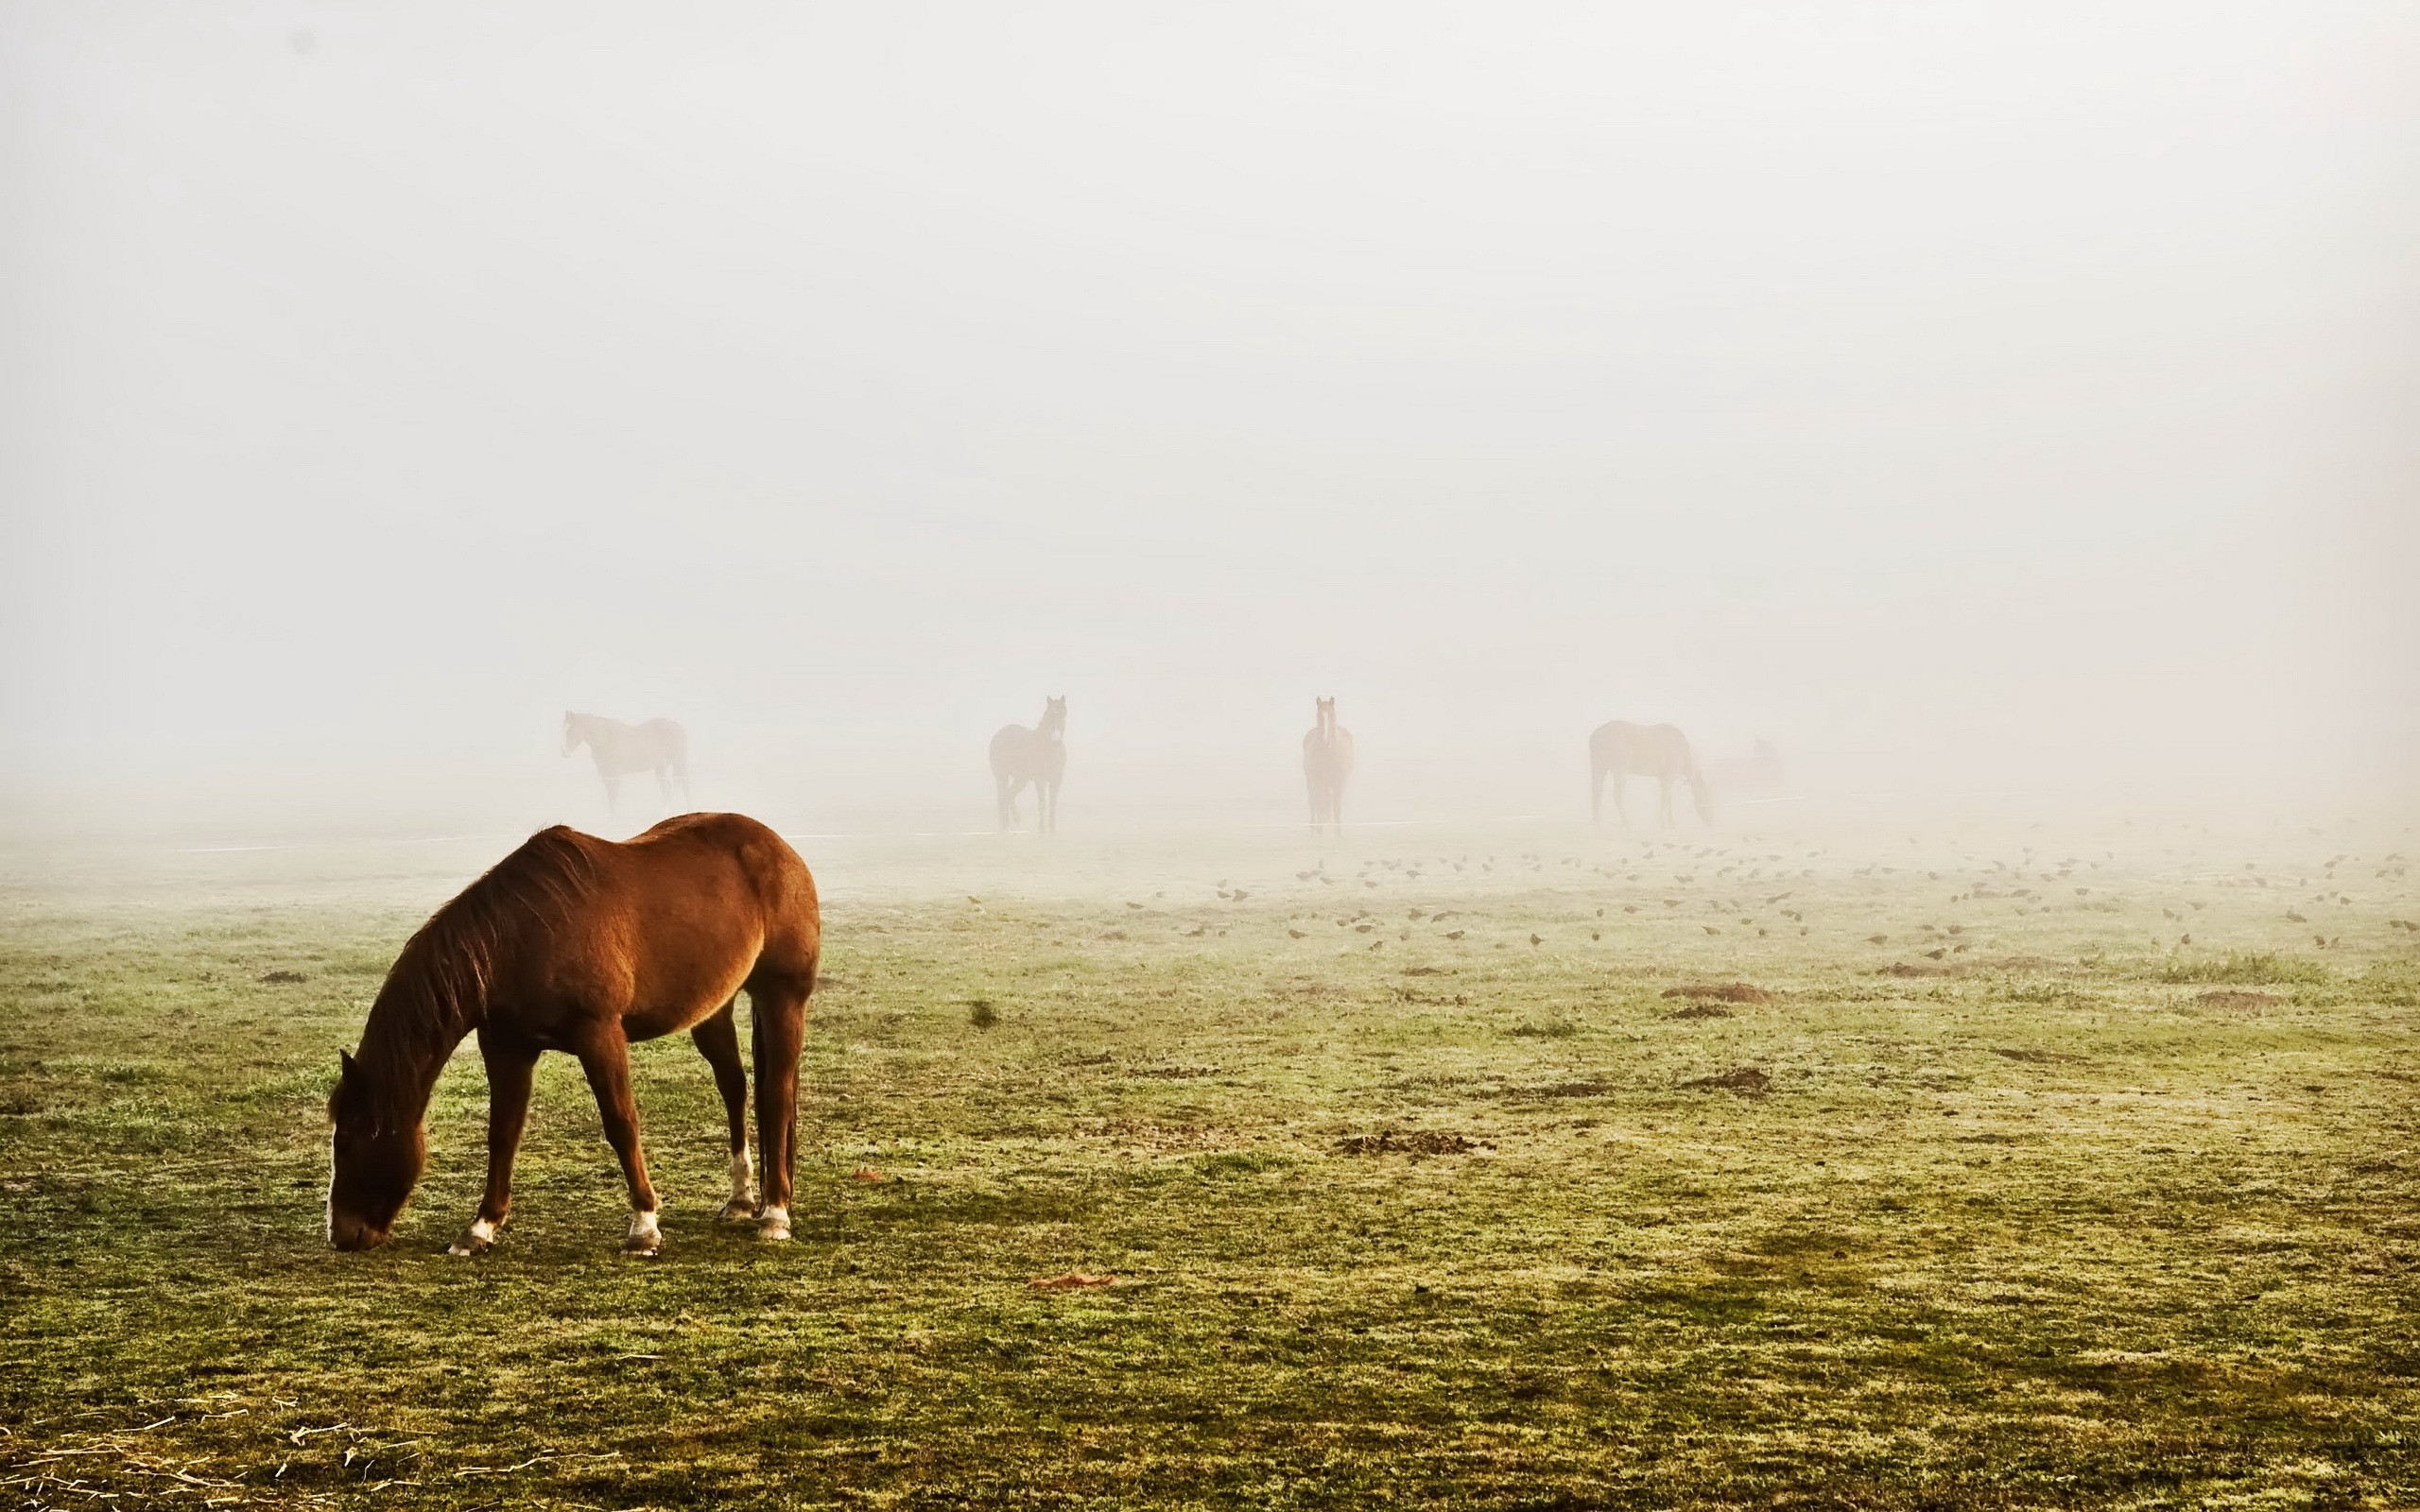 General 2560x1600 horse animals field mammals grass mist outdoors